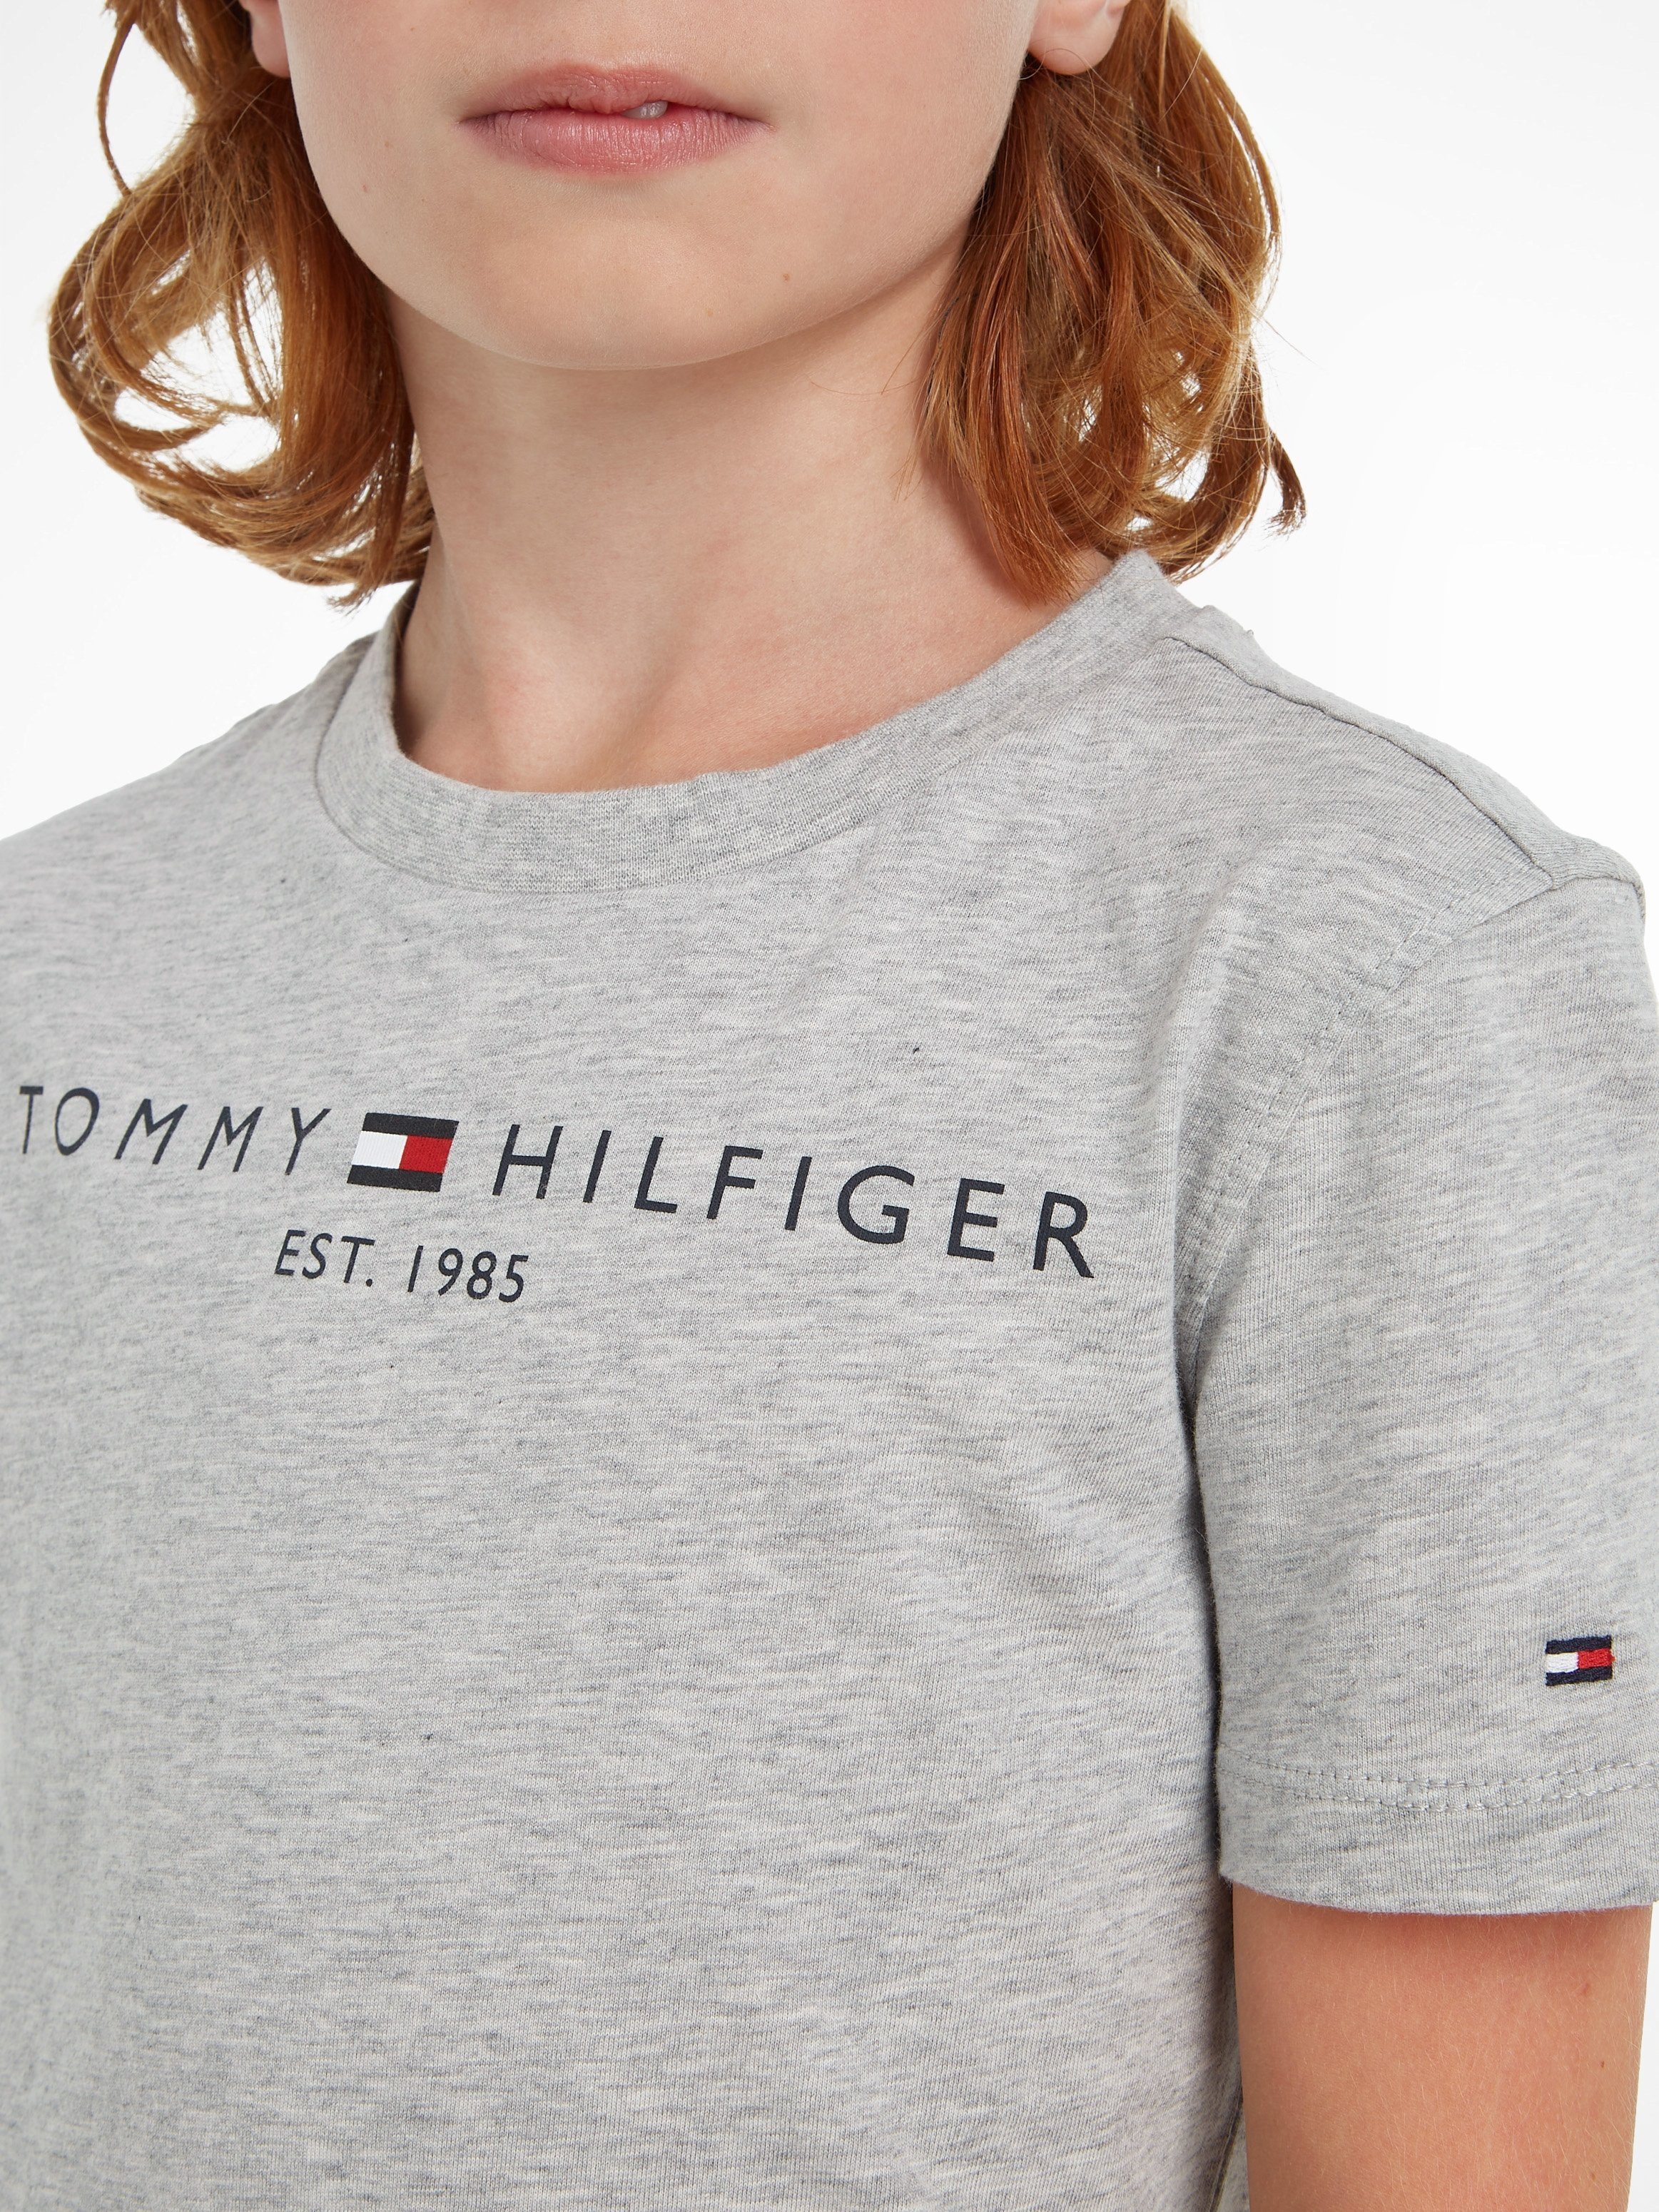 Tommy Hilfiger T-Shirt ESSENTIAL TEE Mädchen und Kids Kinder Junior Jungen MiniMe,für